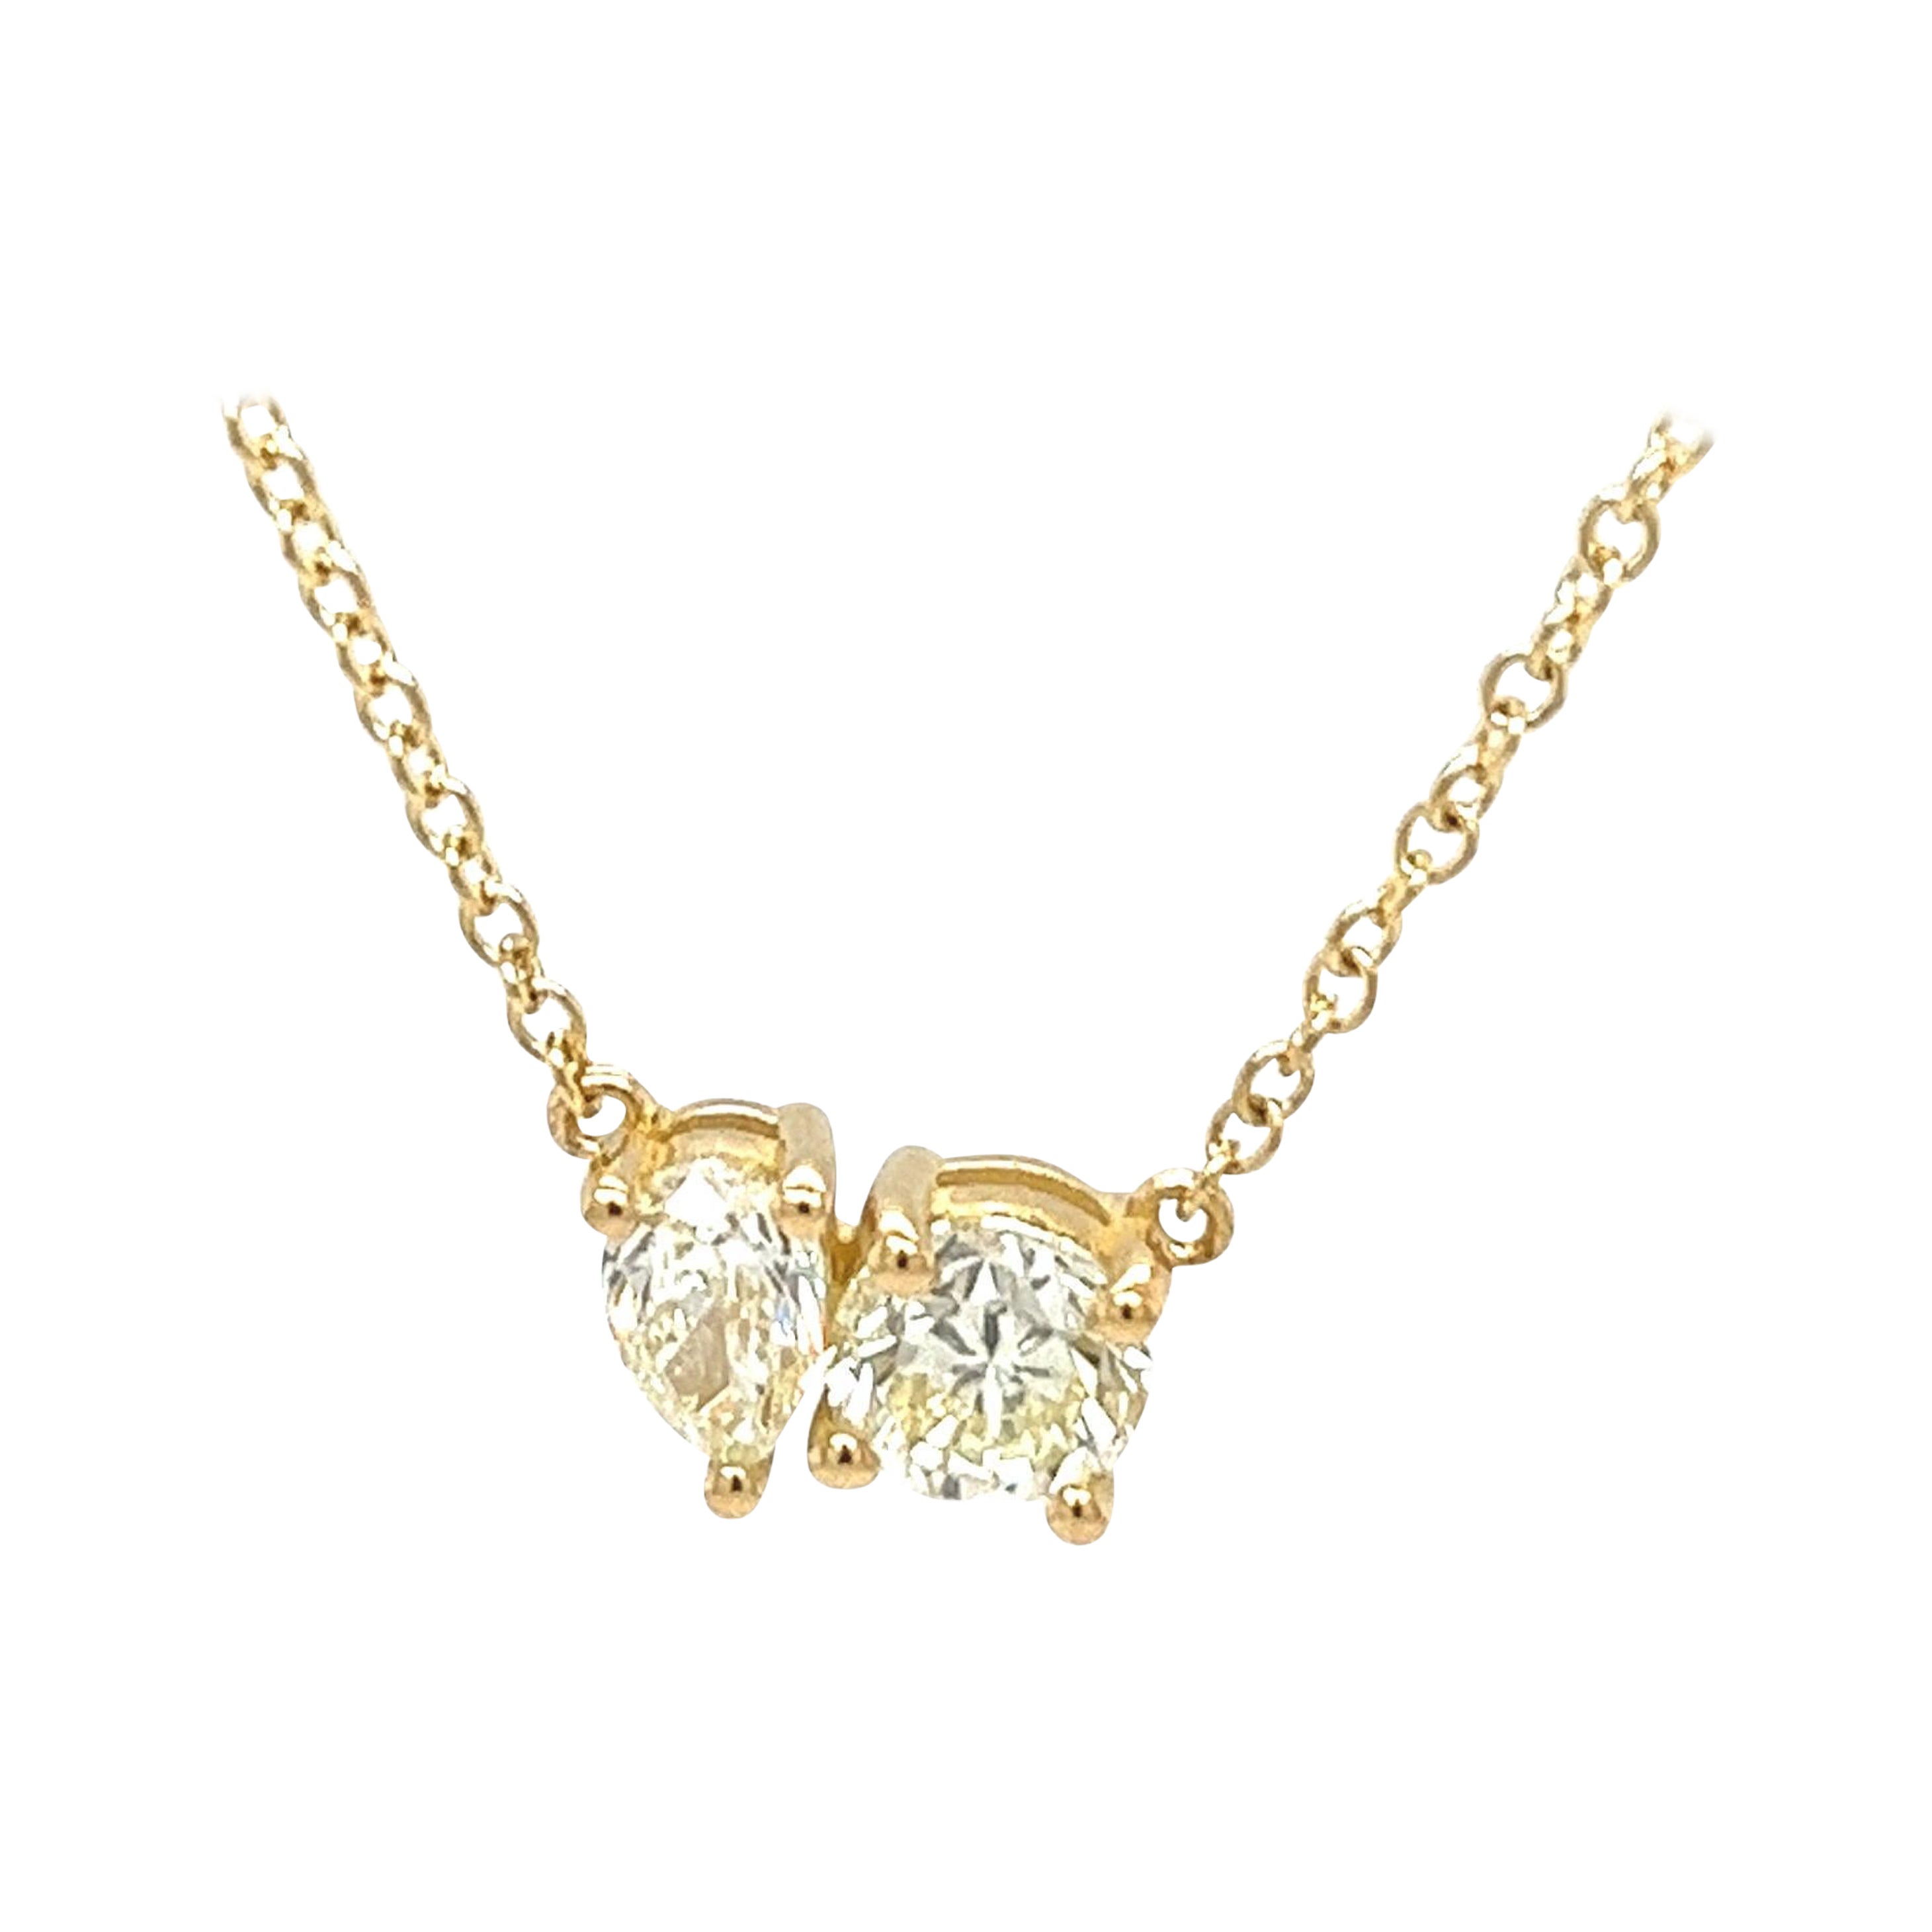 Toi et Moi, collier pendentif en or jaune massif 18 carats avec poire et diamants ronds